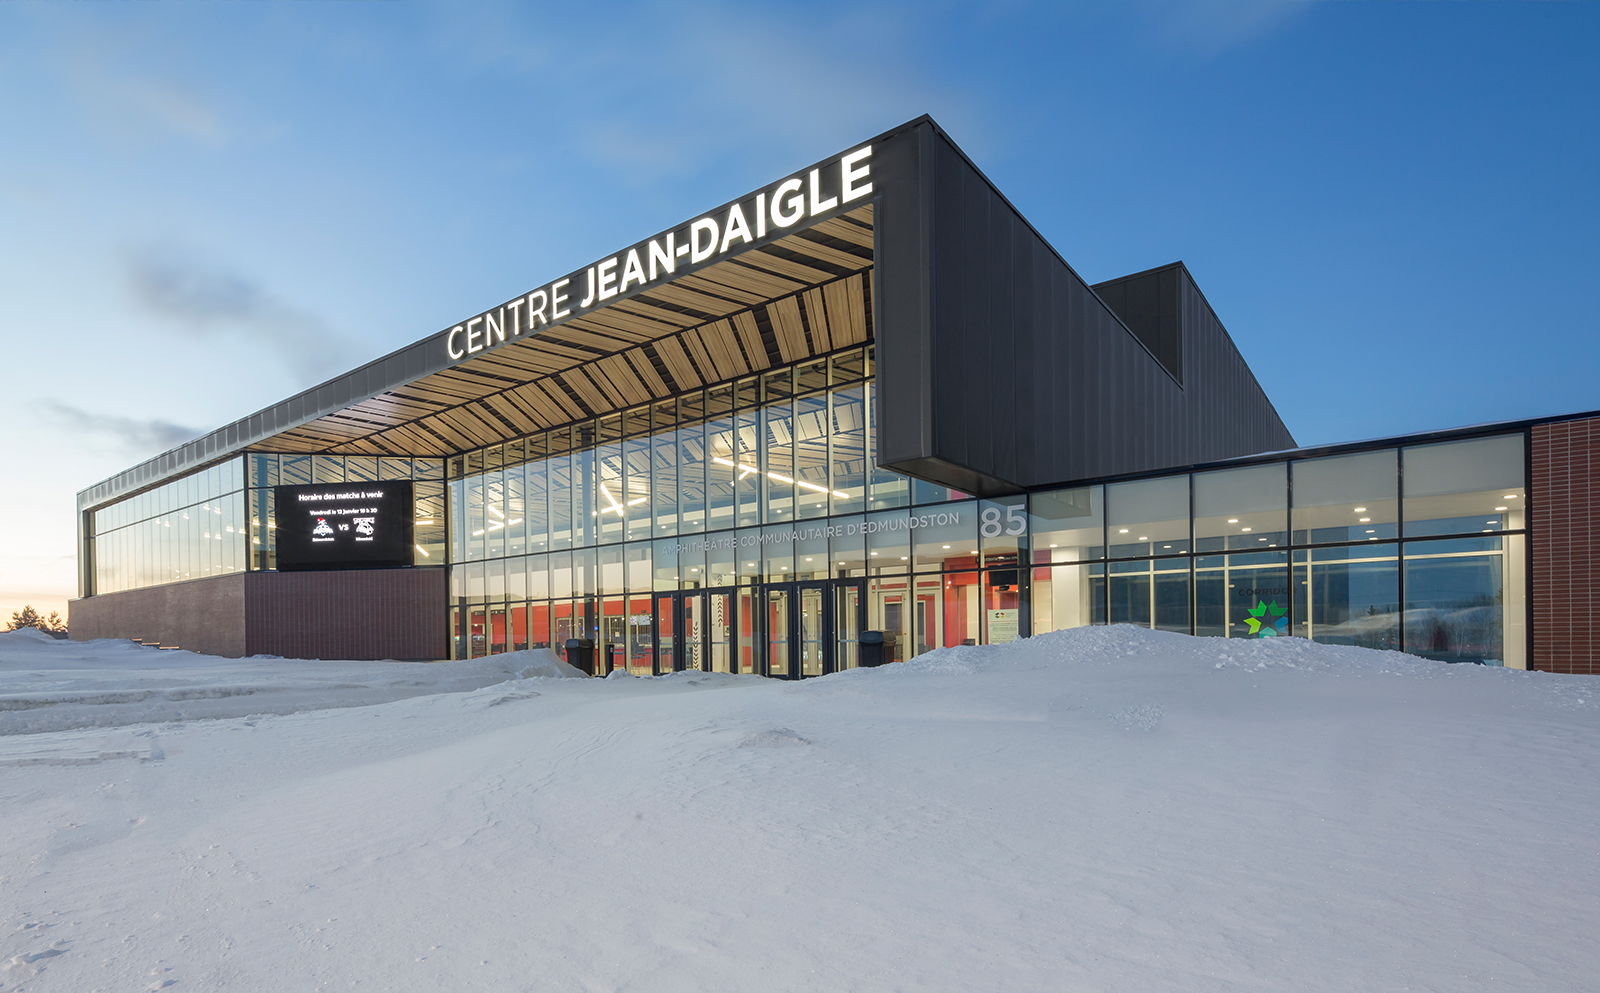 Centre Jean-Daigle